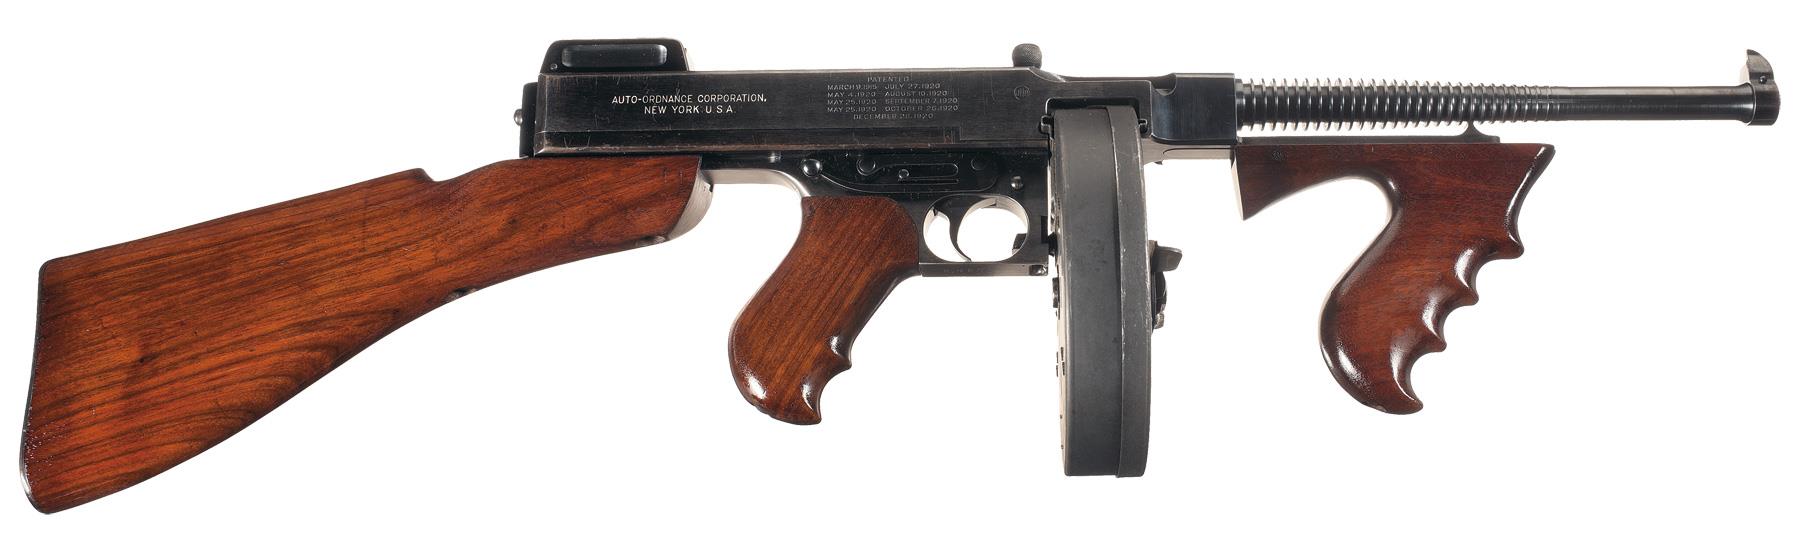 Colt 1921 Thompson Machine gun 45 ACP | Rock Island Auction